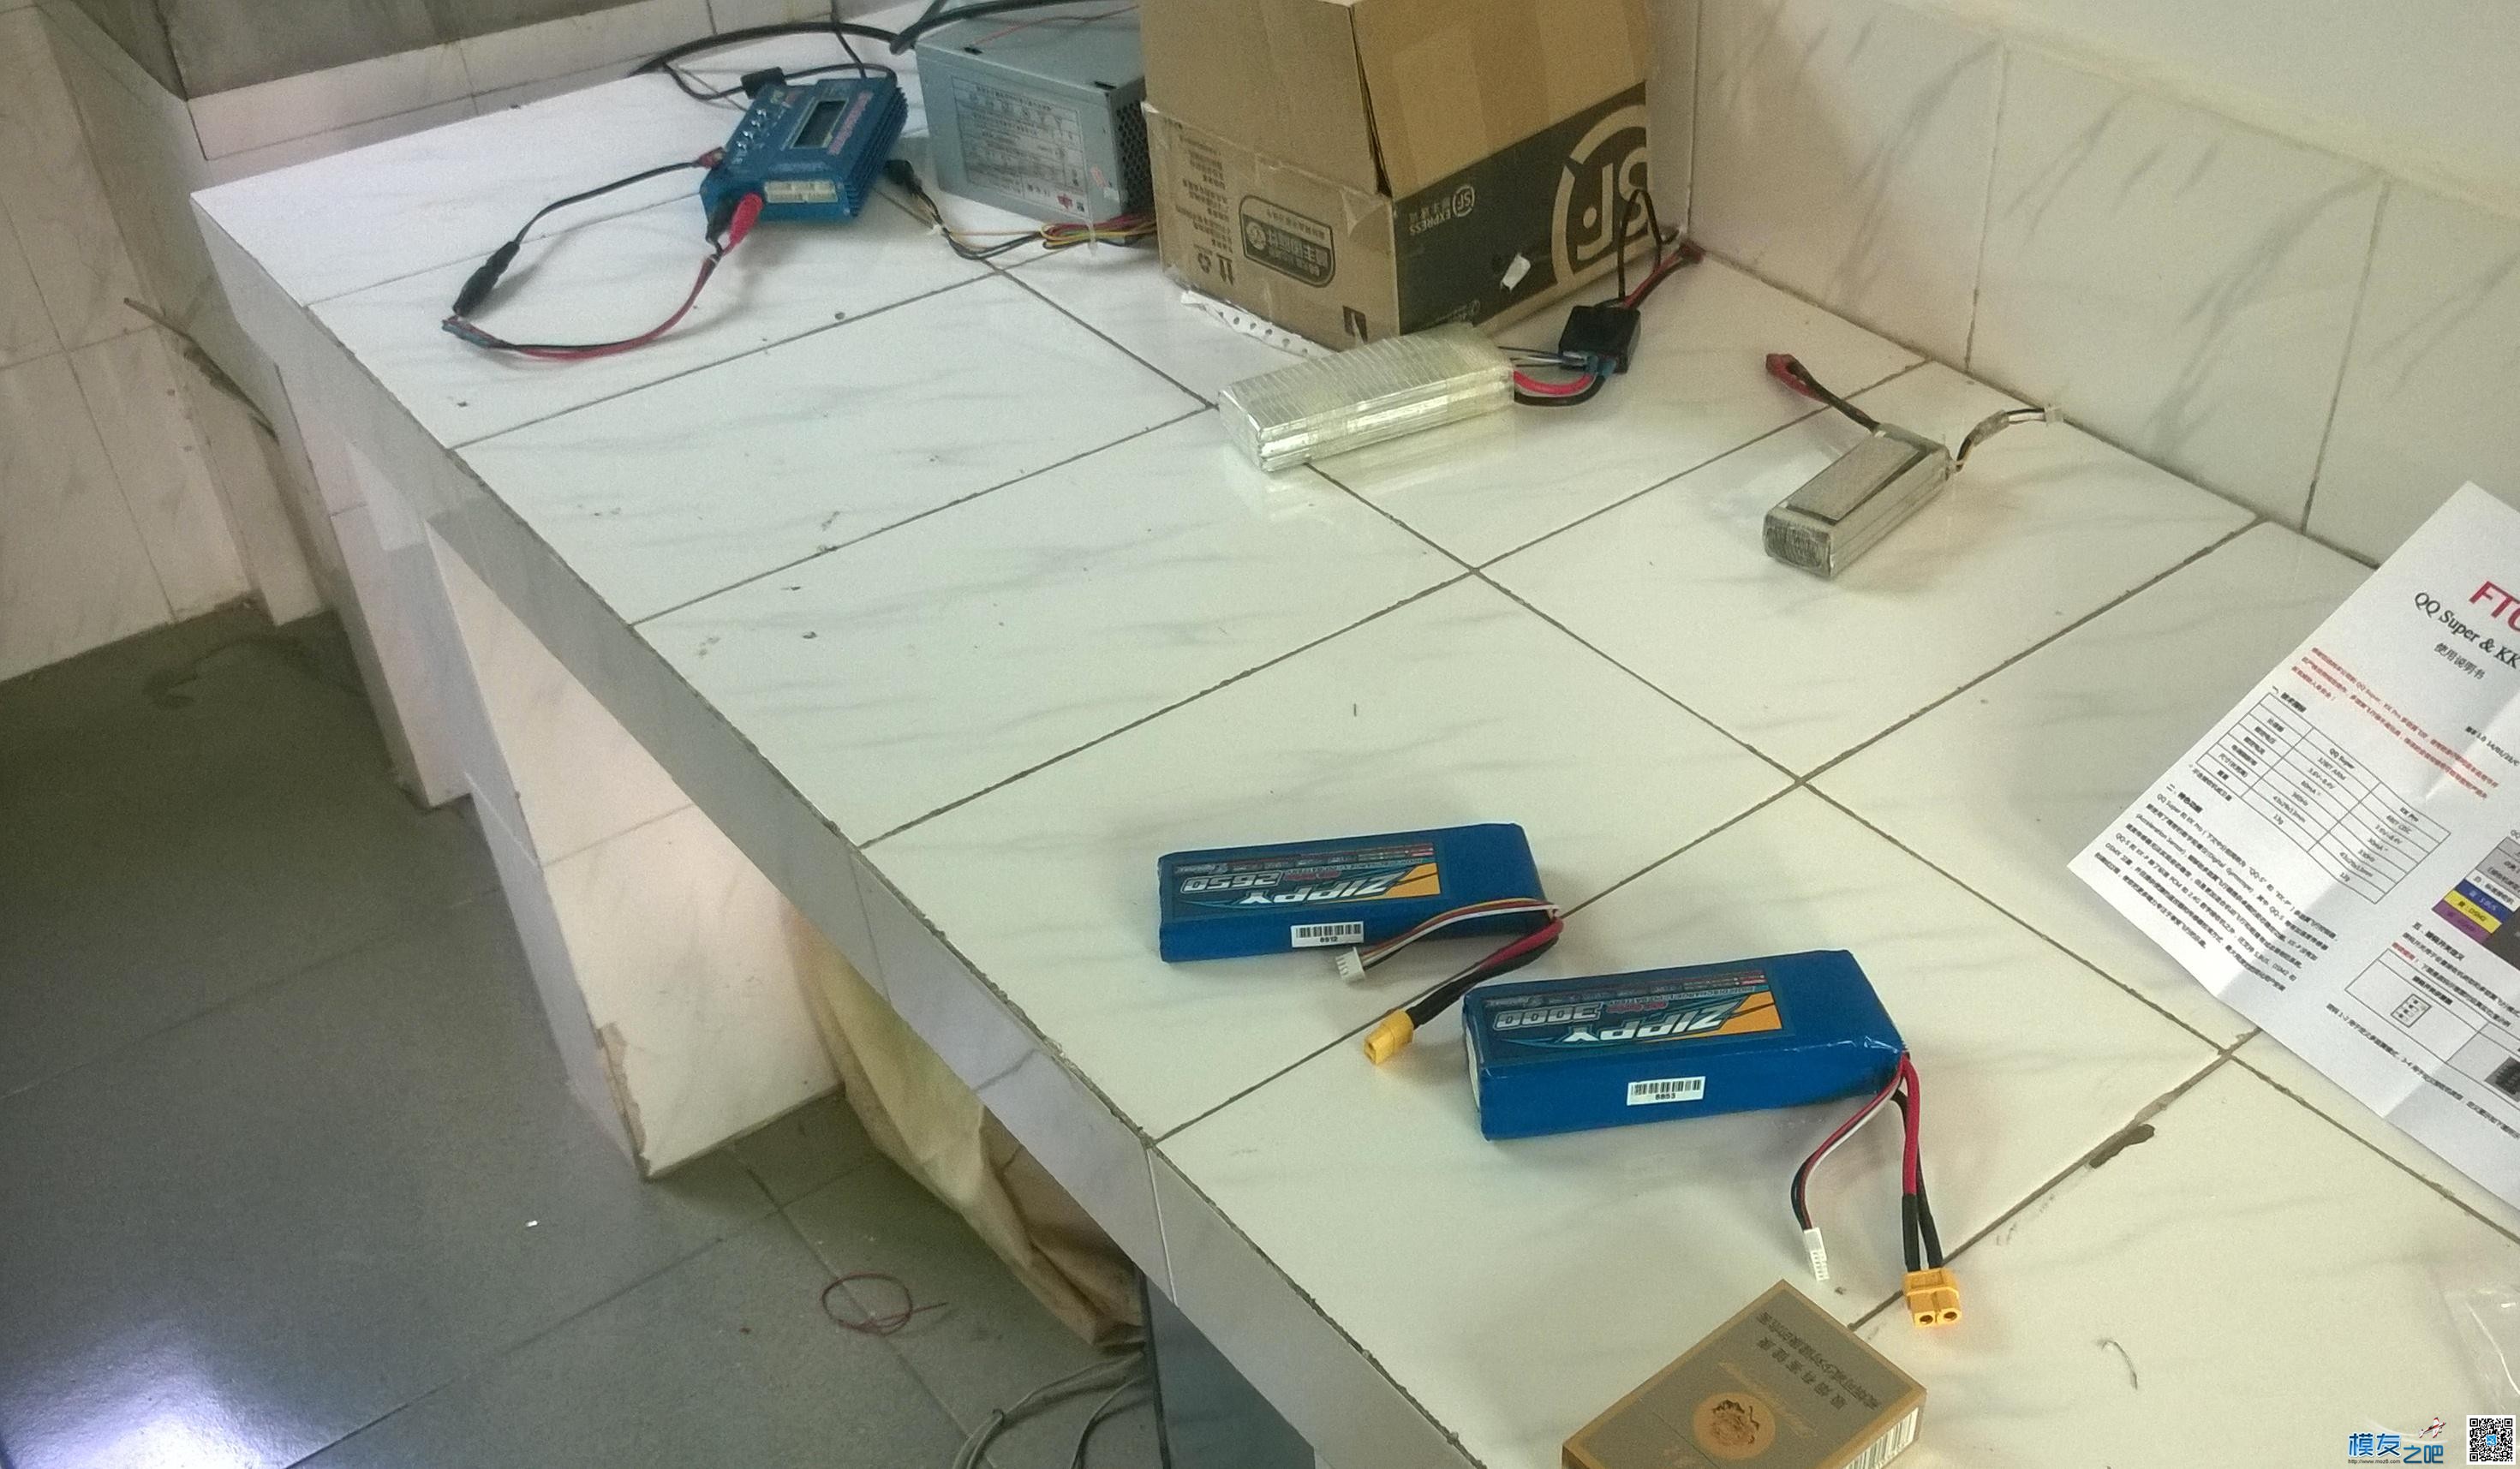 论坛买的QQ飞控和送的电池到货啦 电池,飞控,继续努力,大转盘,于工作 作者:凯莱 1543 